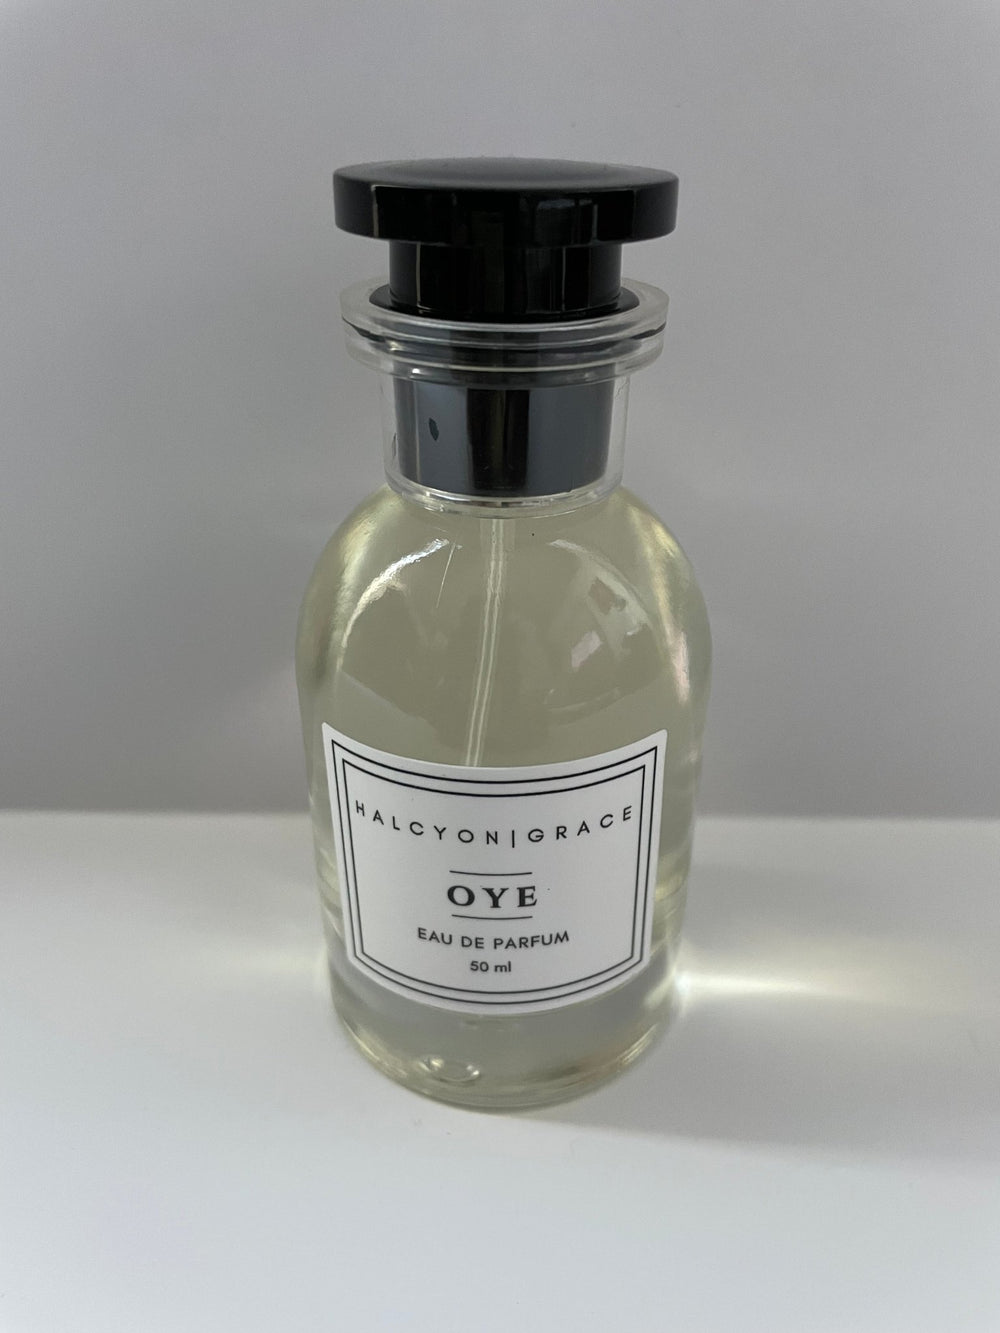 Oye Eau de Parfum - The Village Retail